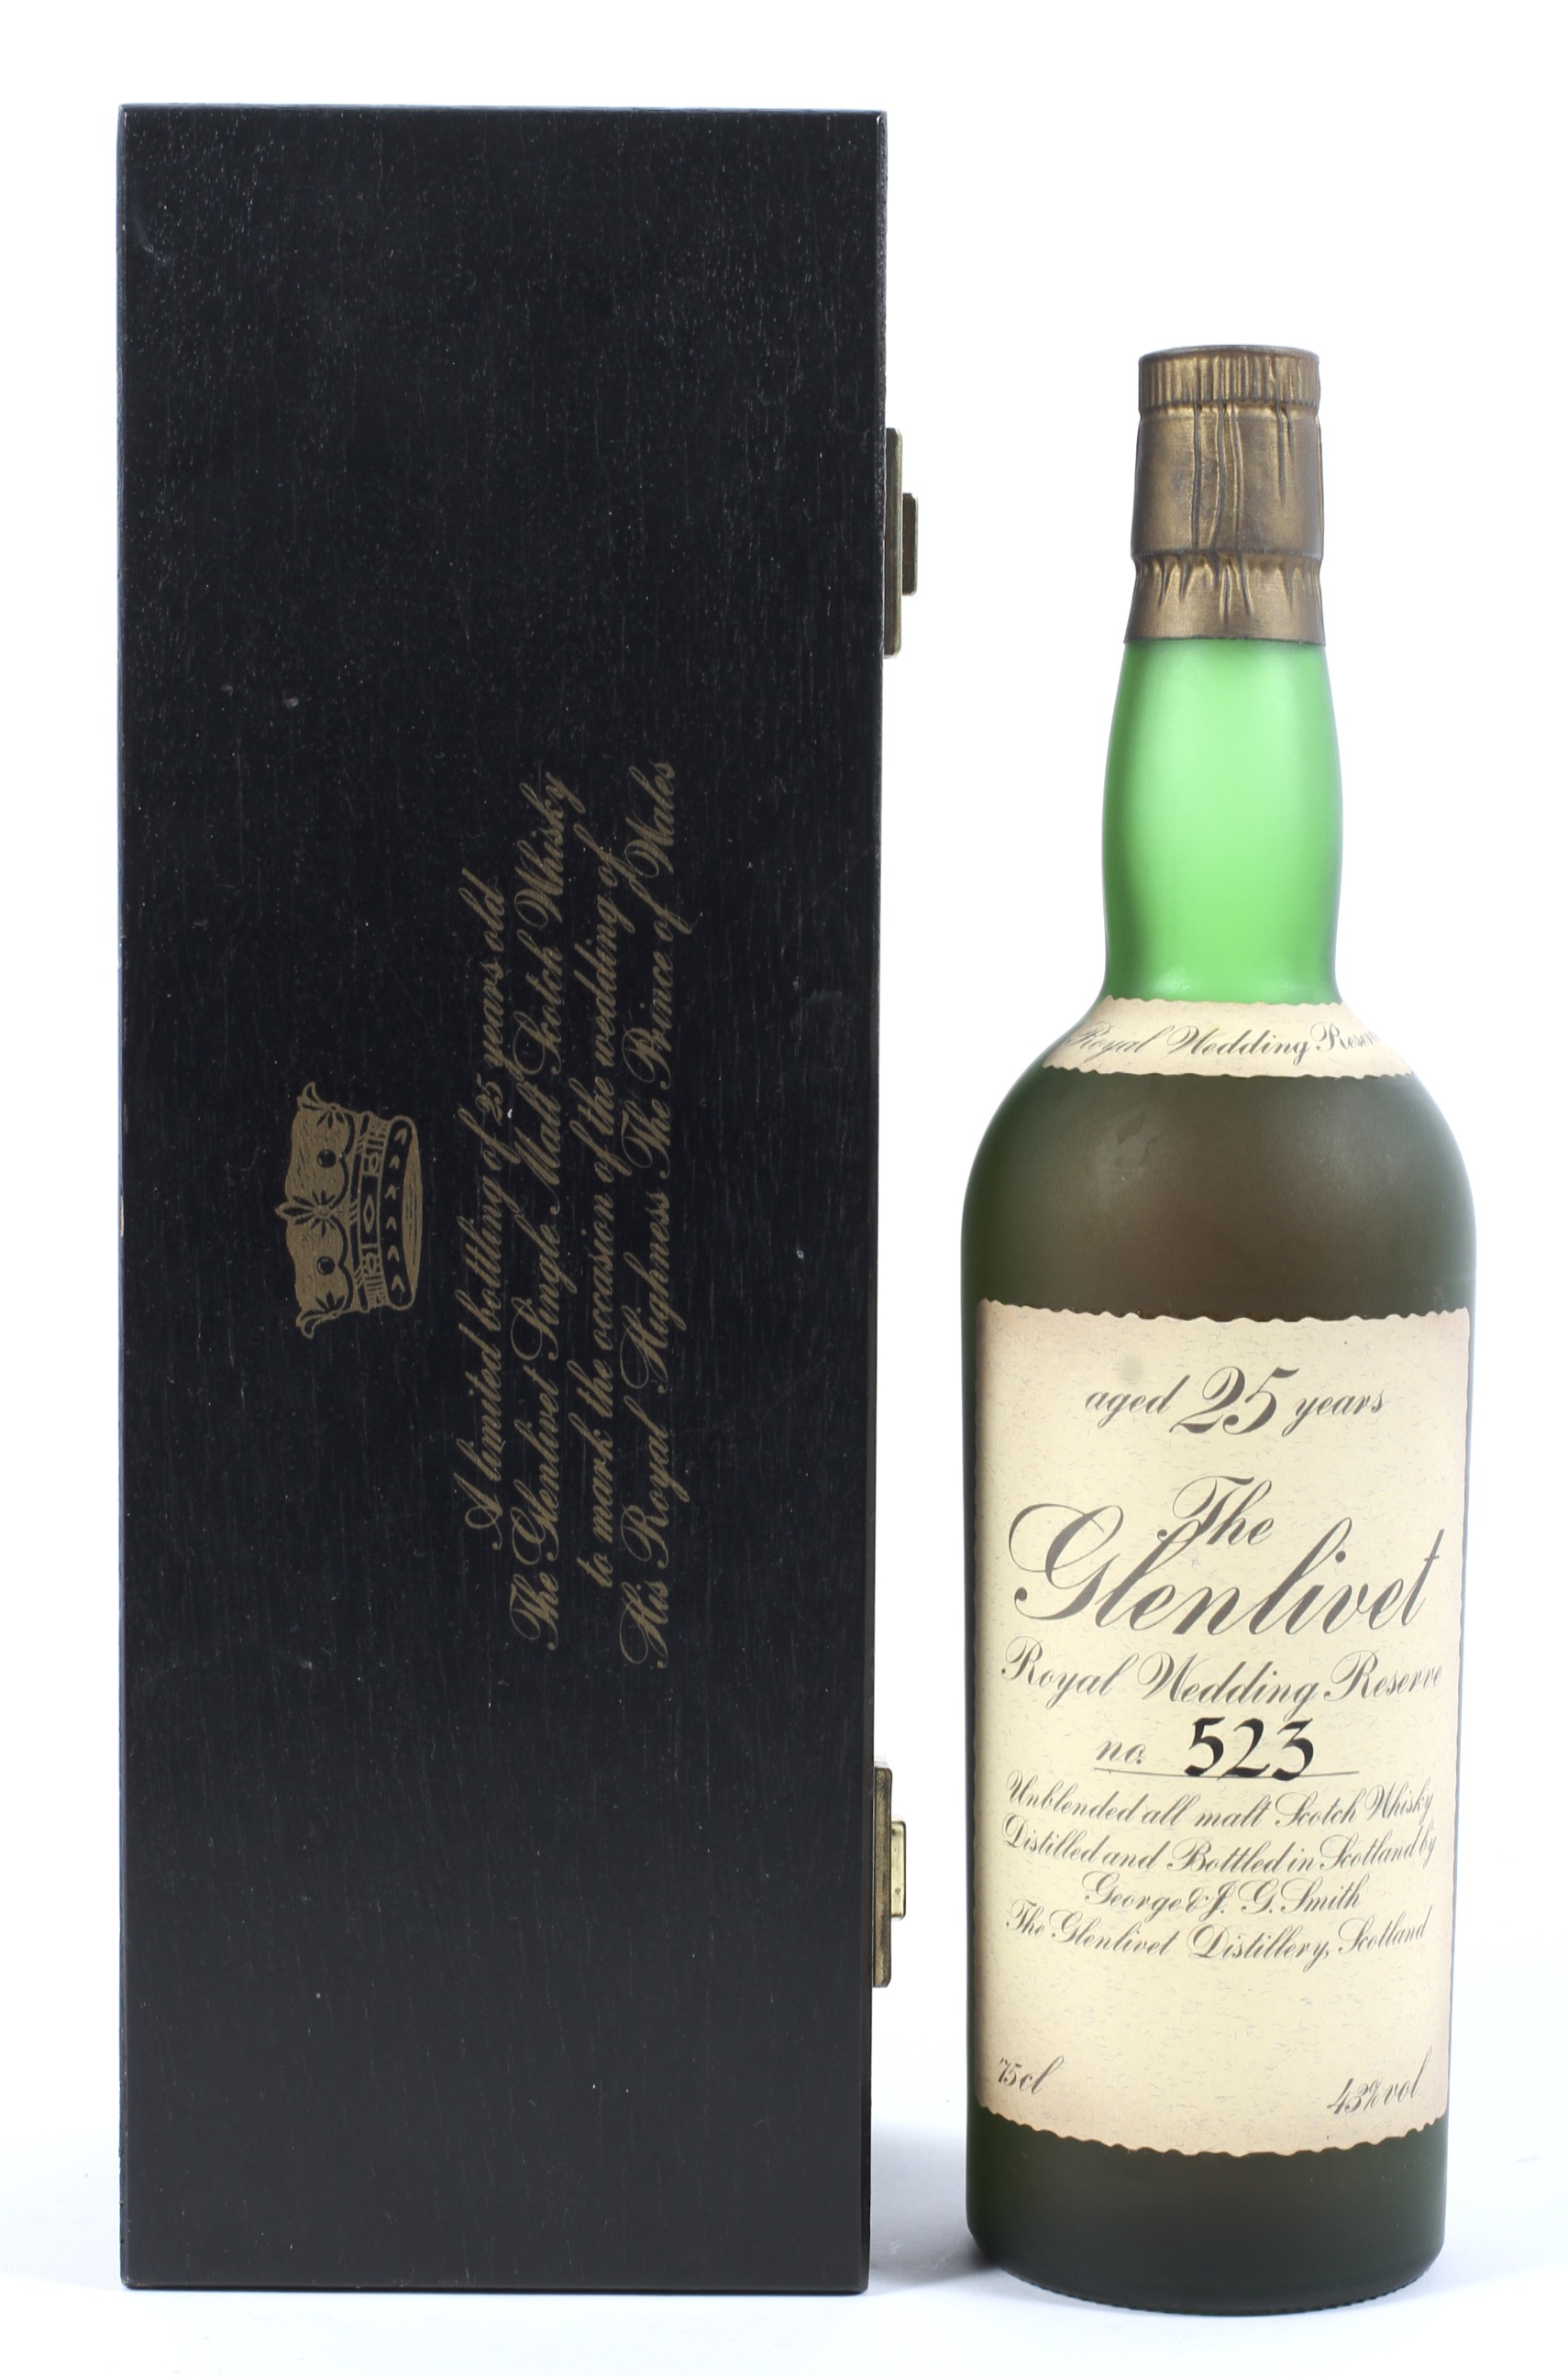 A bottle of The Glenlivet 25 year old Royal Wedding reserve unblended all malt Scotch whisky, - Image 2 of 9